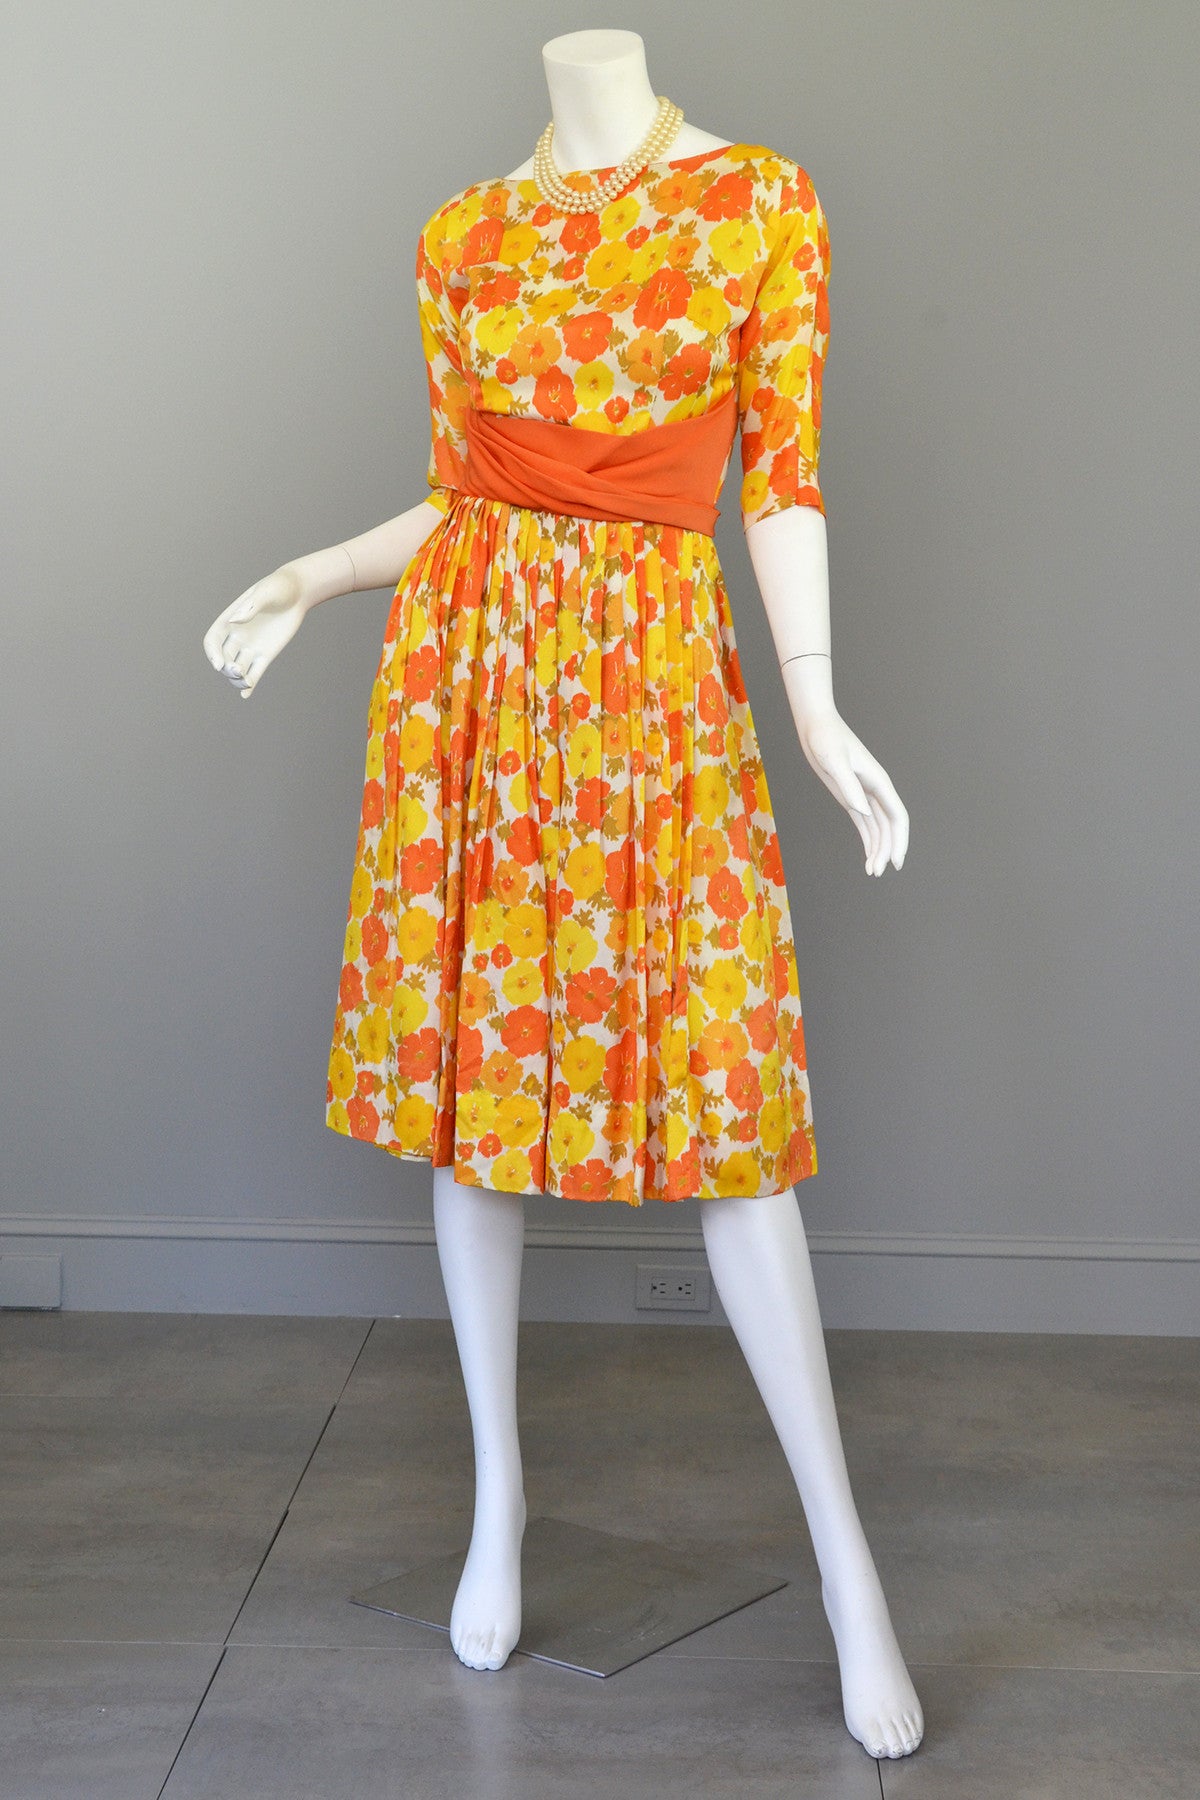 1960 dresses